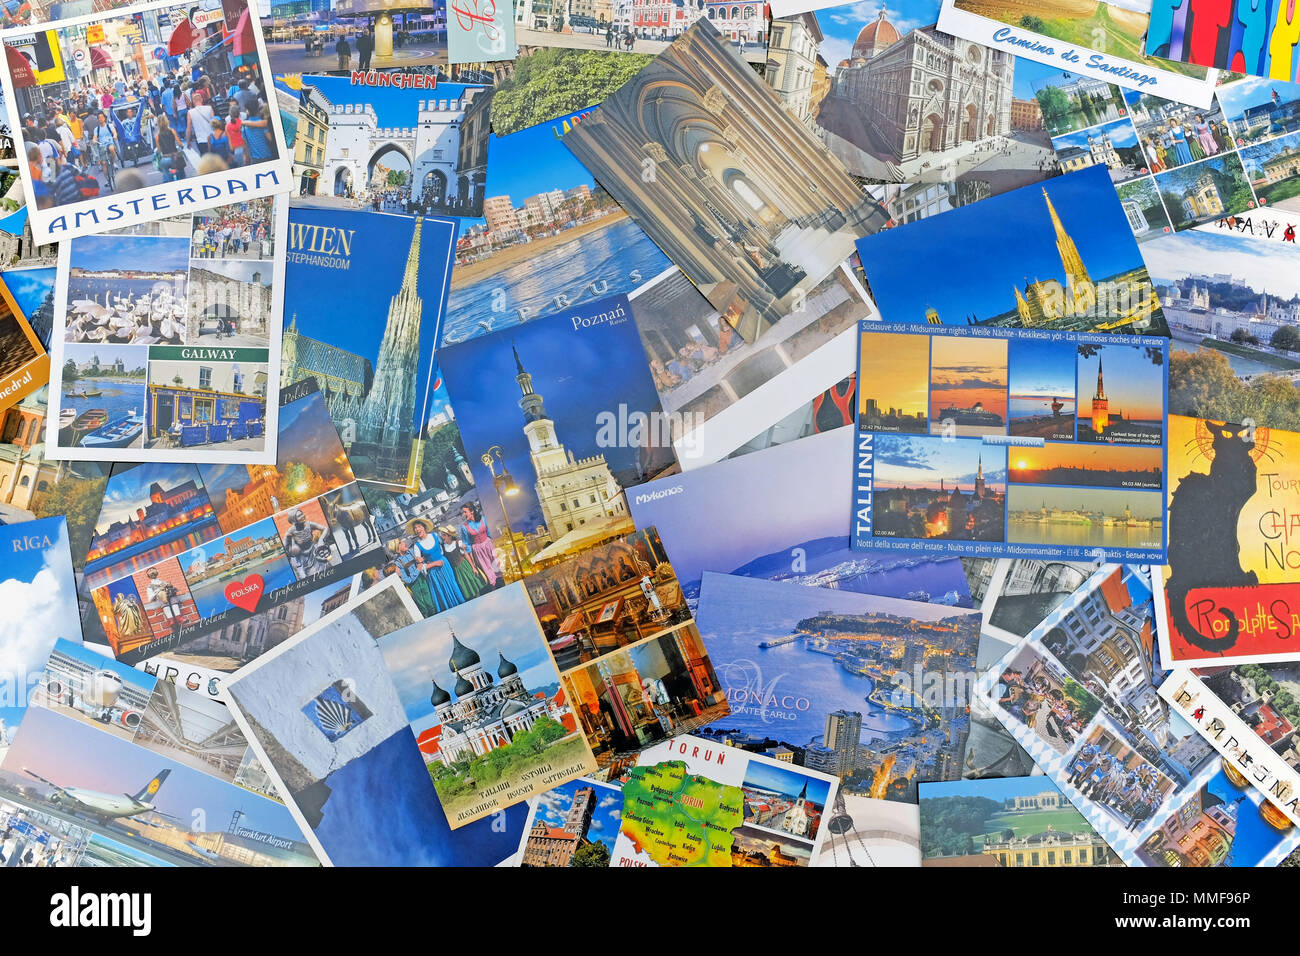 Carte postale européenne du tourisme sites et destinations avec montage populaire auprès des voyageurs. Banque D'Images